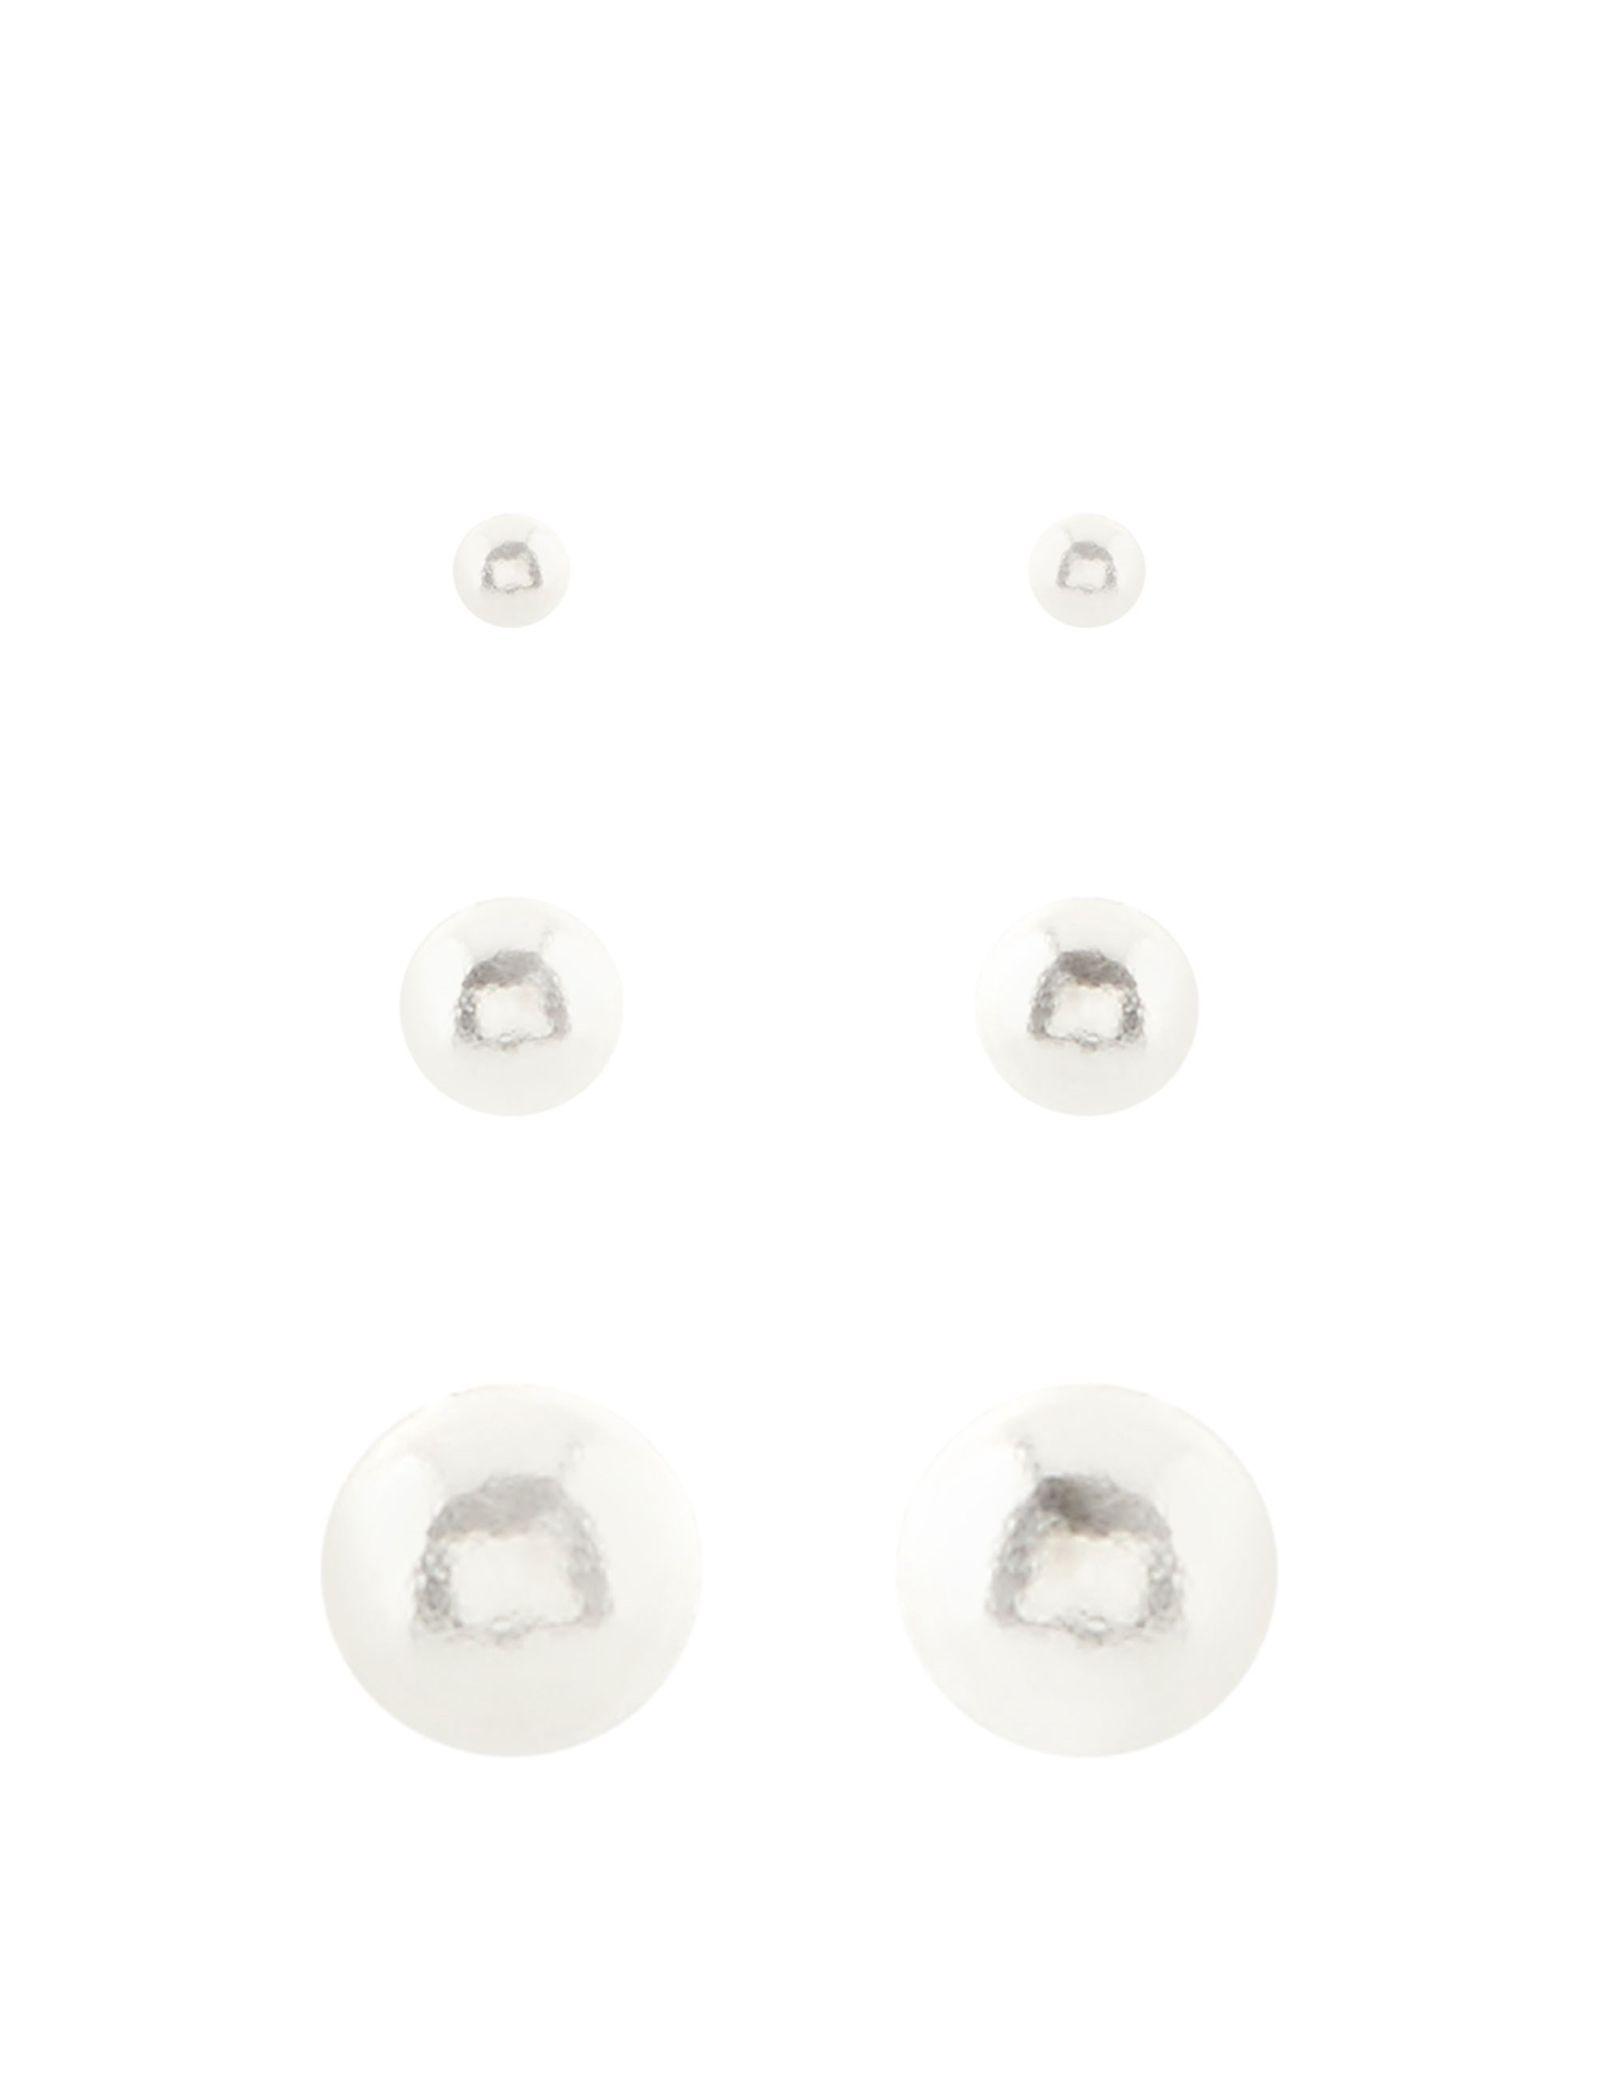 ست گوشواره زنانه بسته 3 عددی - اکسسورایز تک سایز - نقره اي - 2